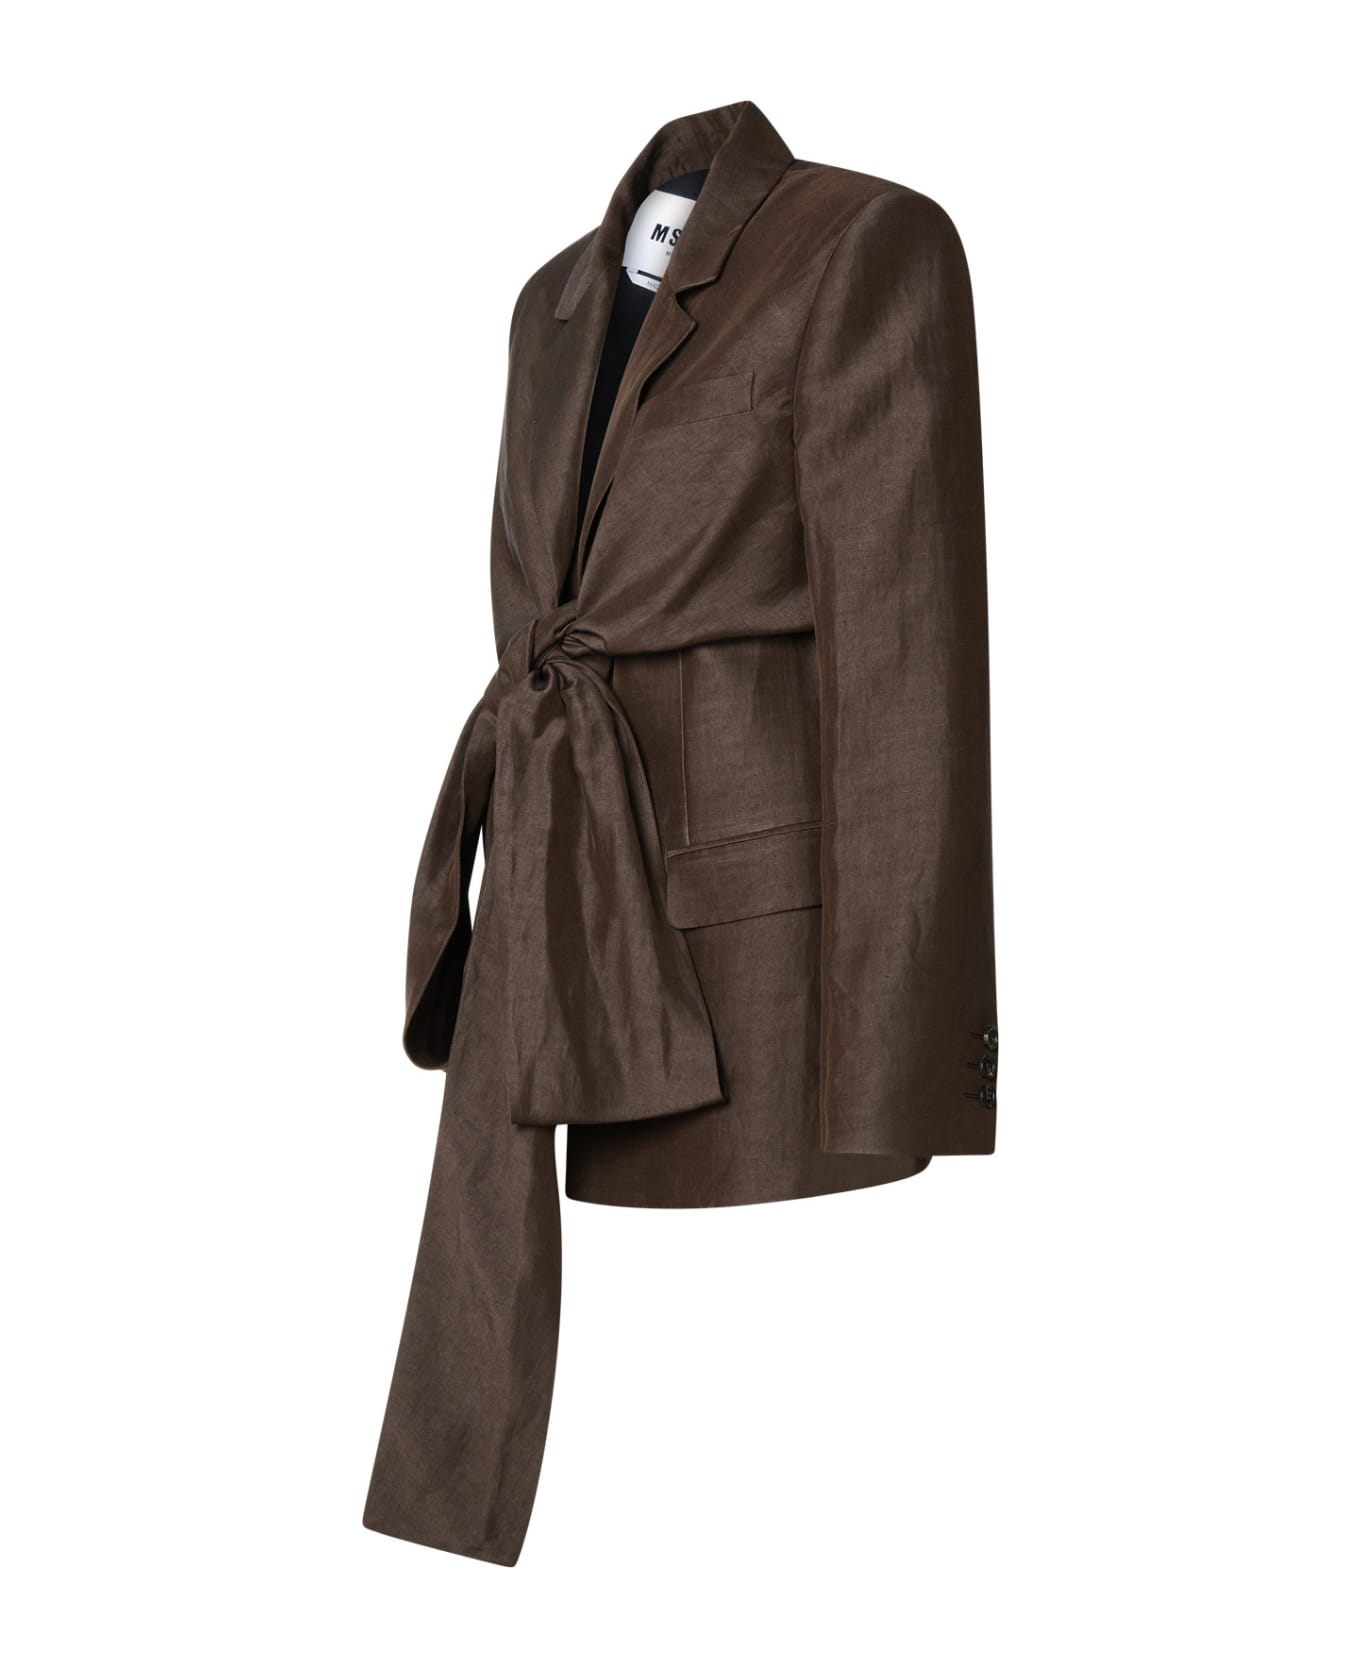 MSGM Blazer In Brown Linen Blend - Brown ジャケット